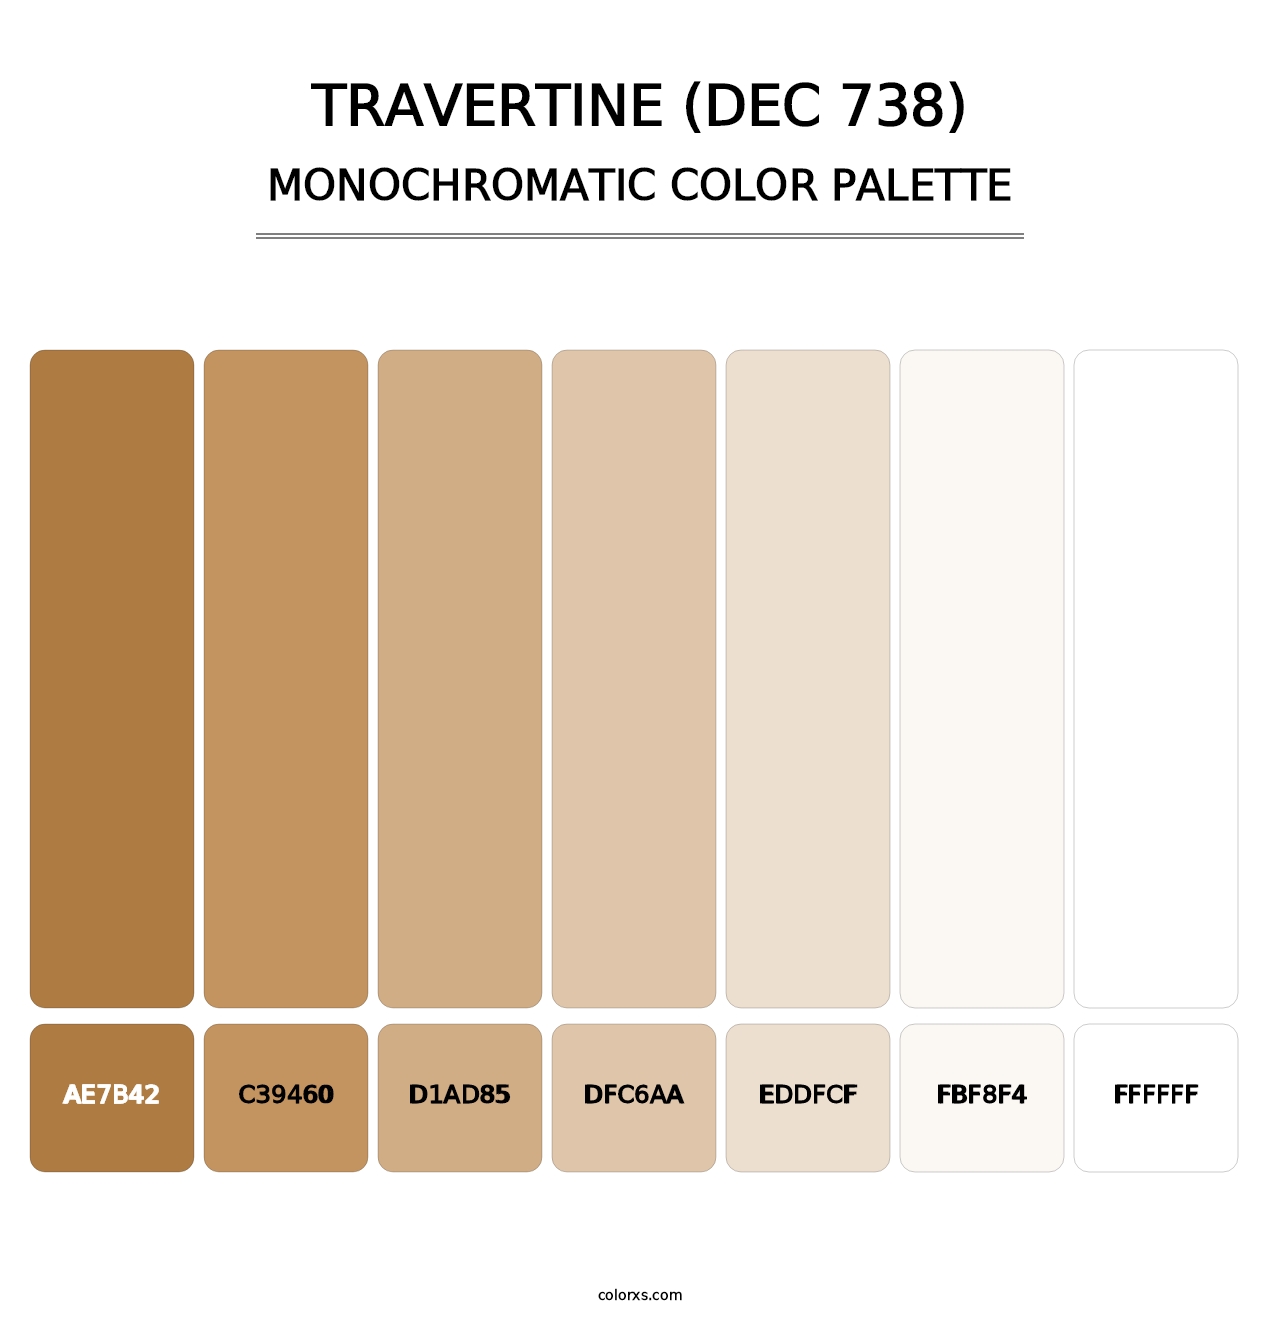 Travertine (DEC 738) - Monochromatic Color Palette